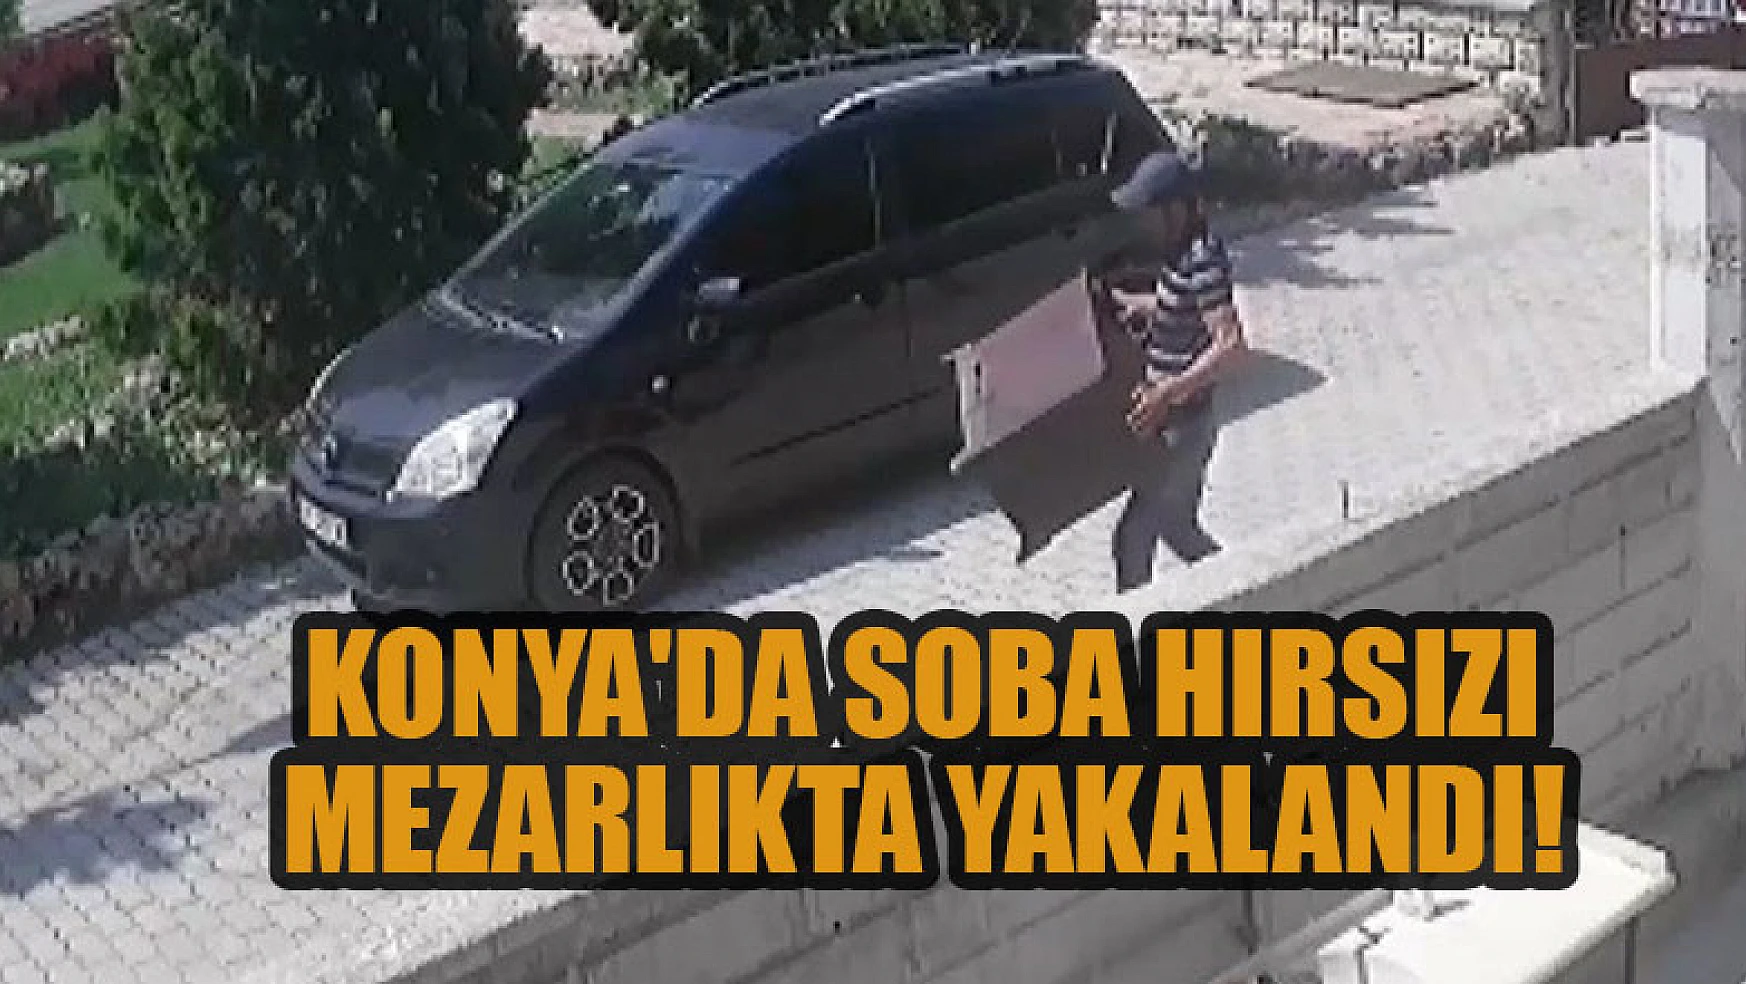 Konya'da soba hırsızı mezarlıkta polise yakalandı!